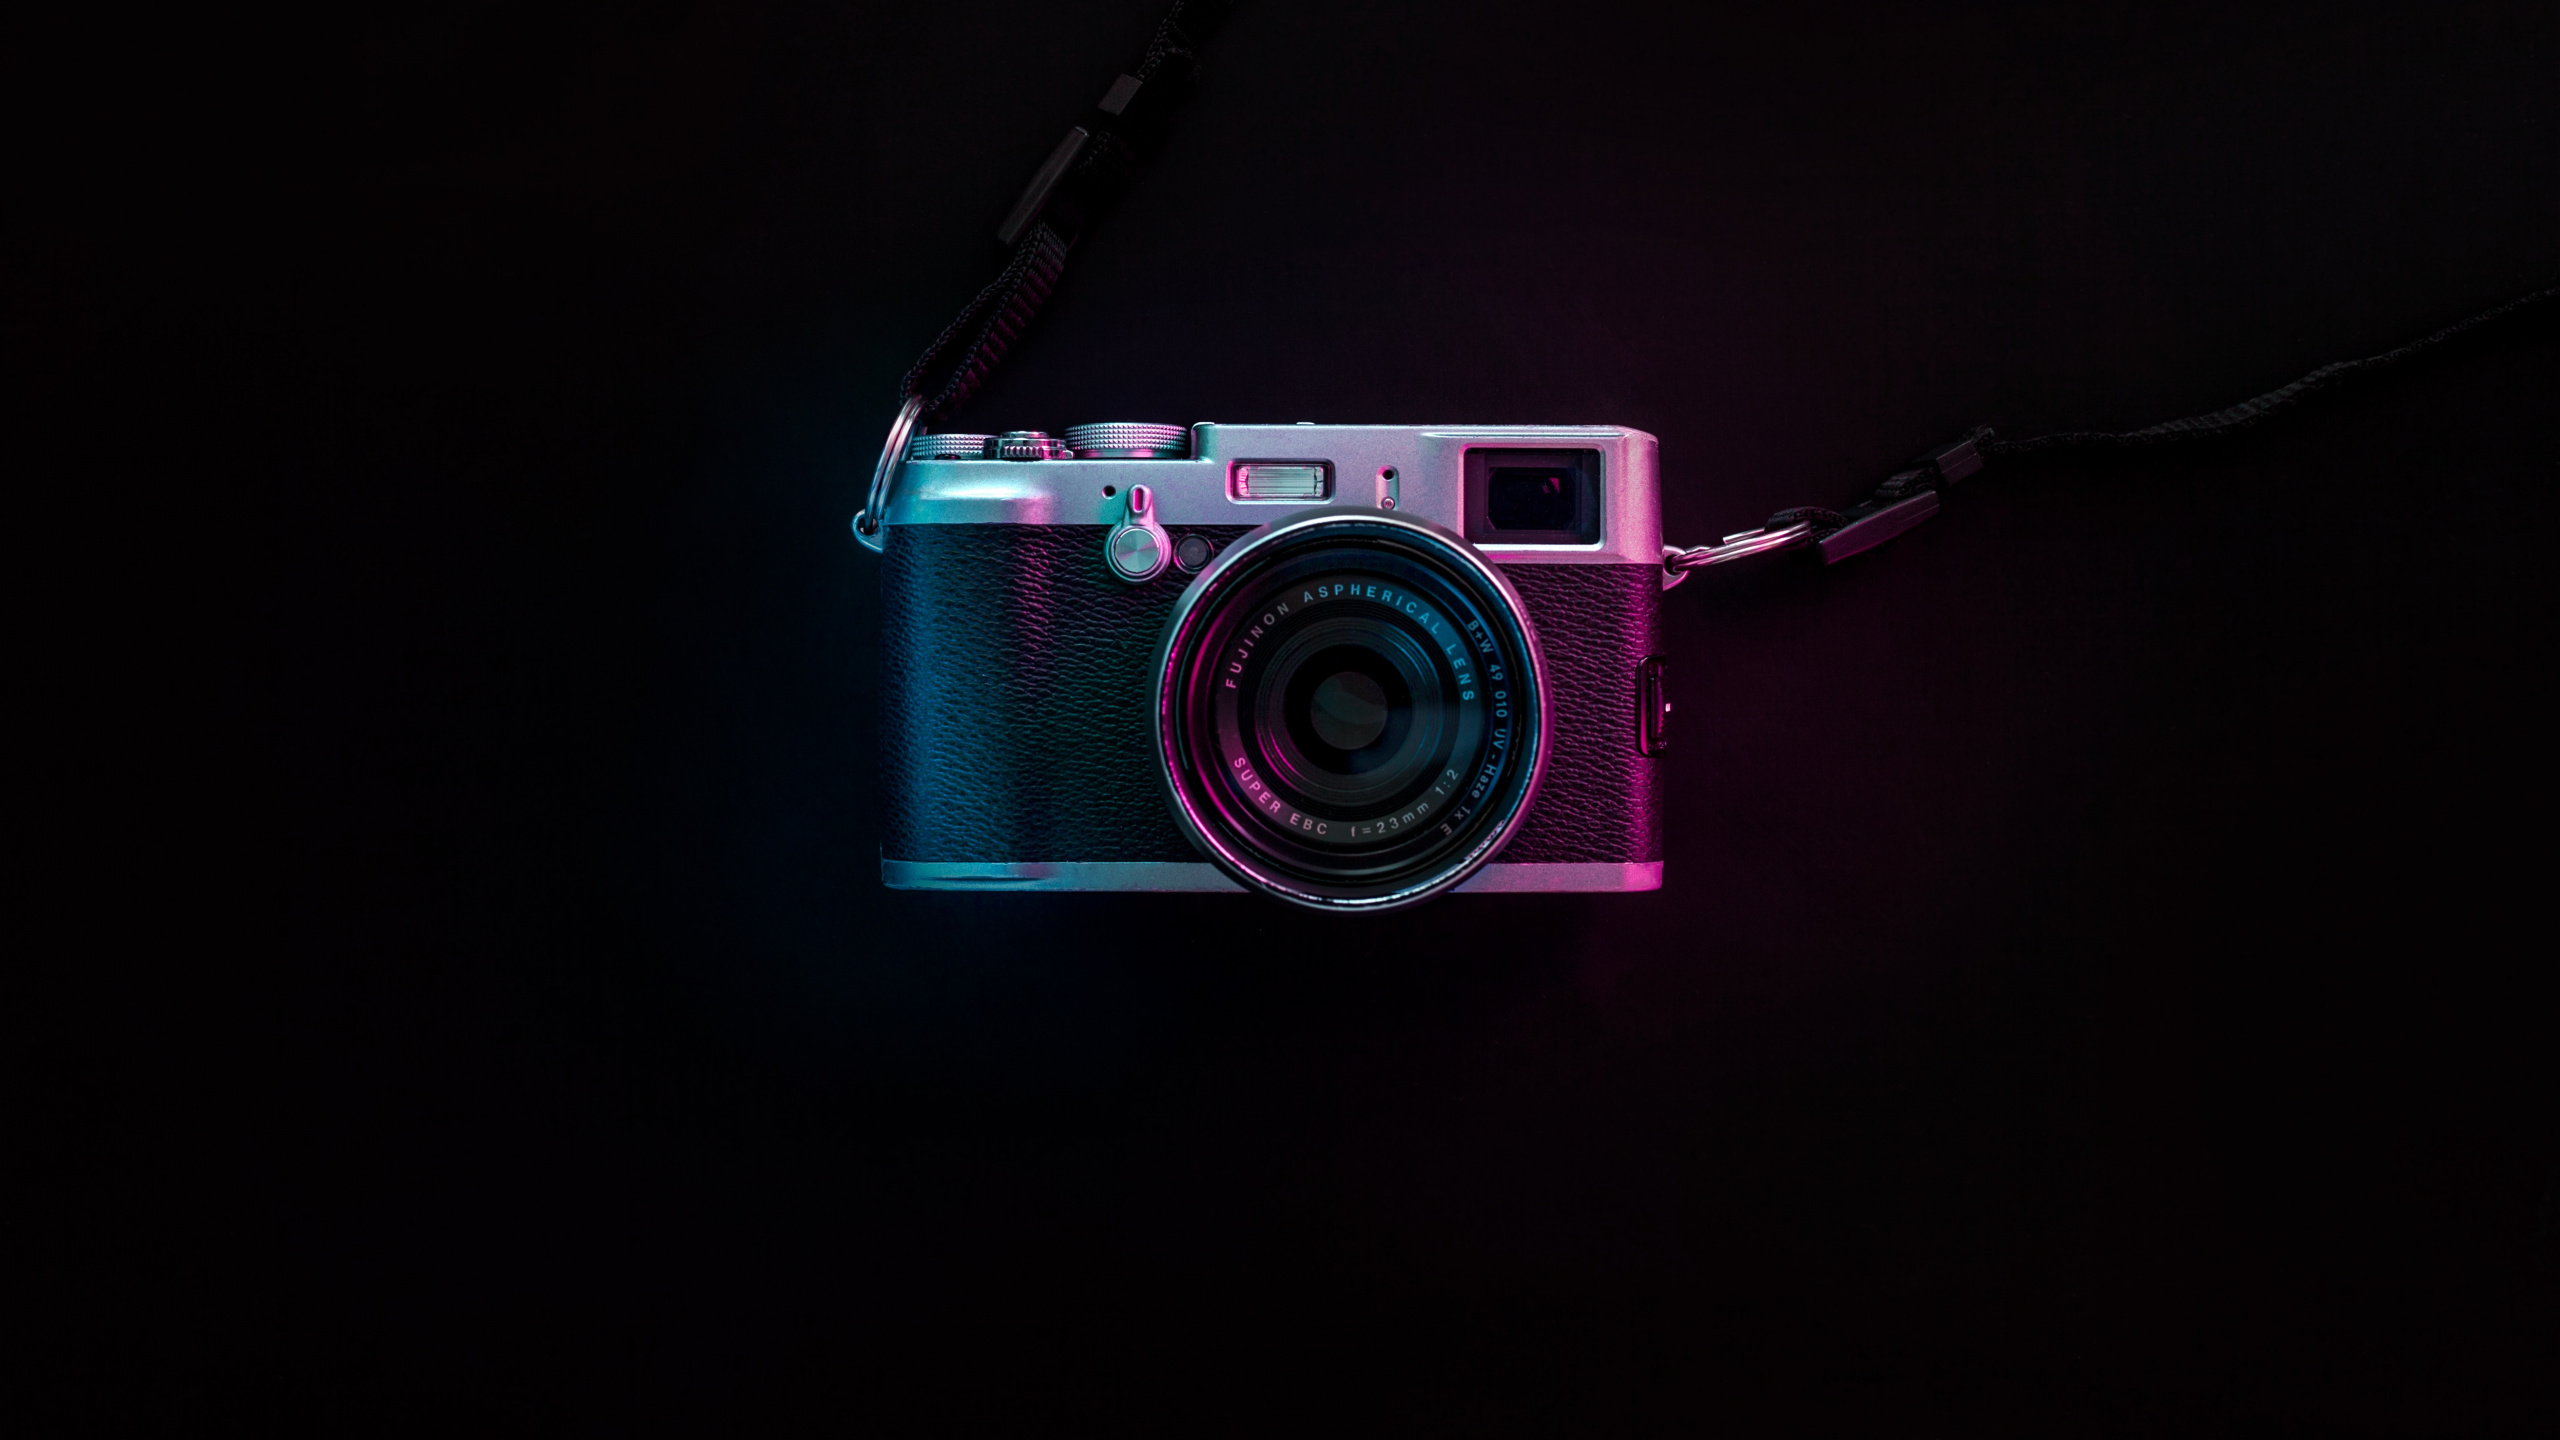 粉红色, 光学照相机, 拍摄像头, 光, 数字照相机 壁纸 2560x1440 允许